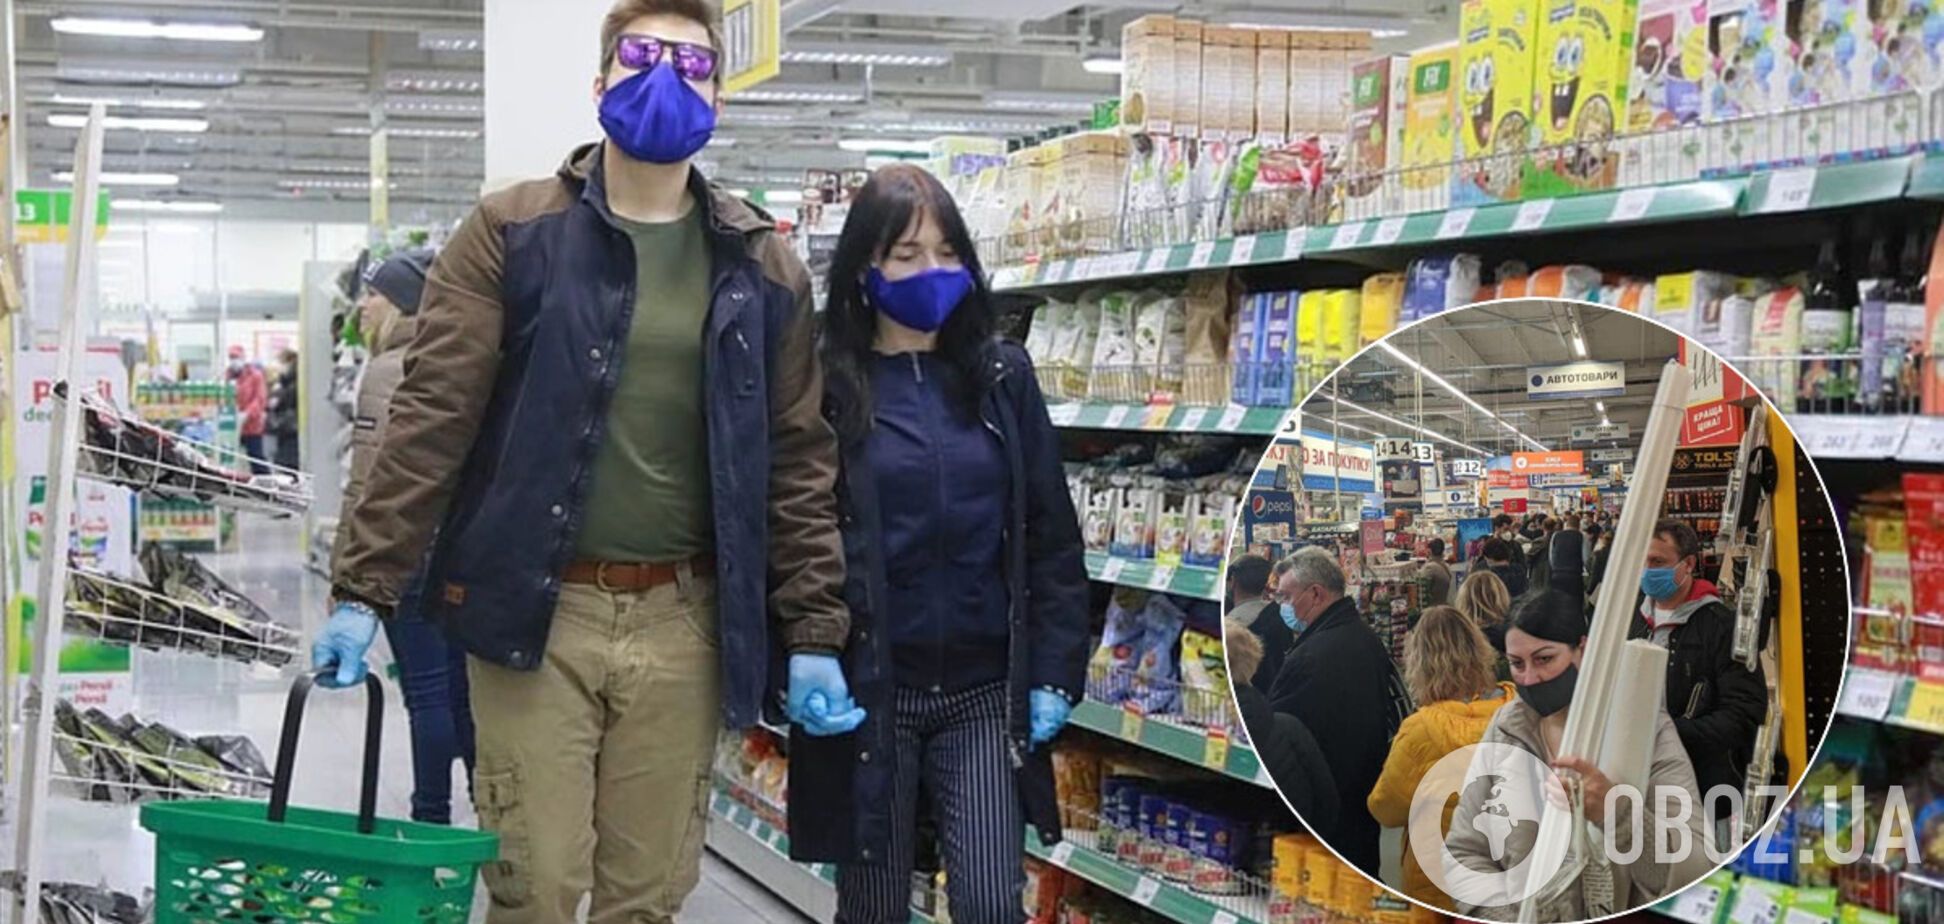 Через закриття маленьких магазинів українці штурмують гіпермаркети: з'явилися фото